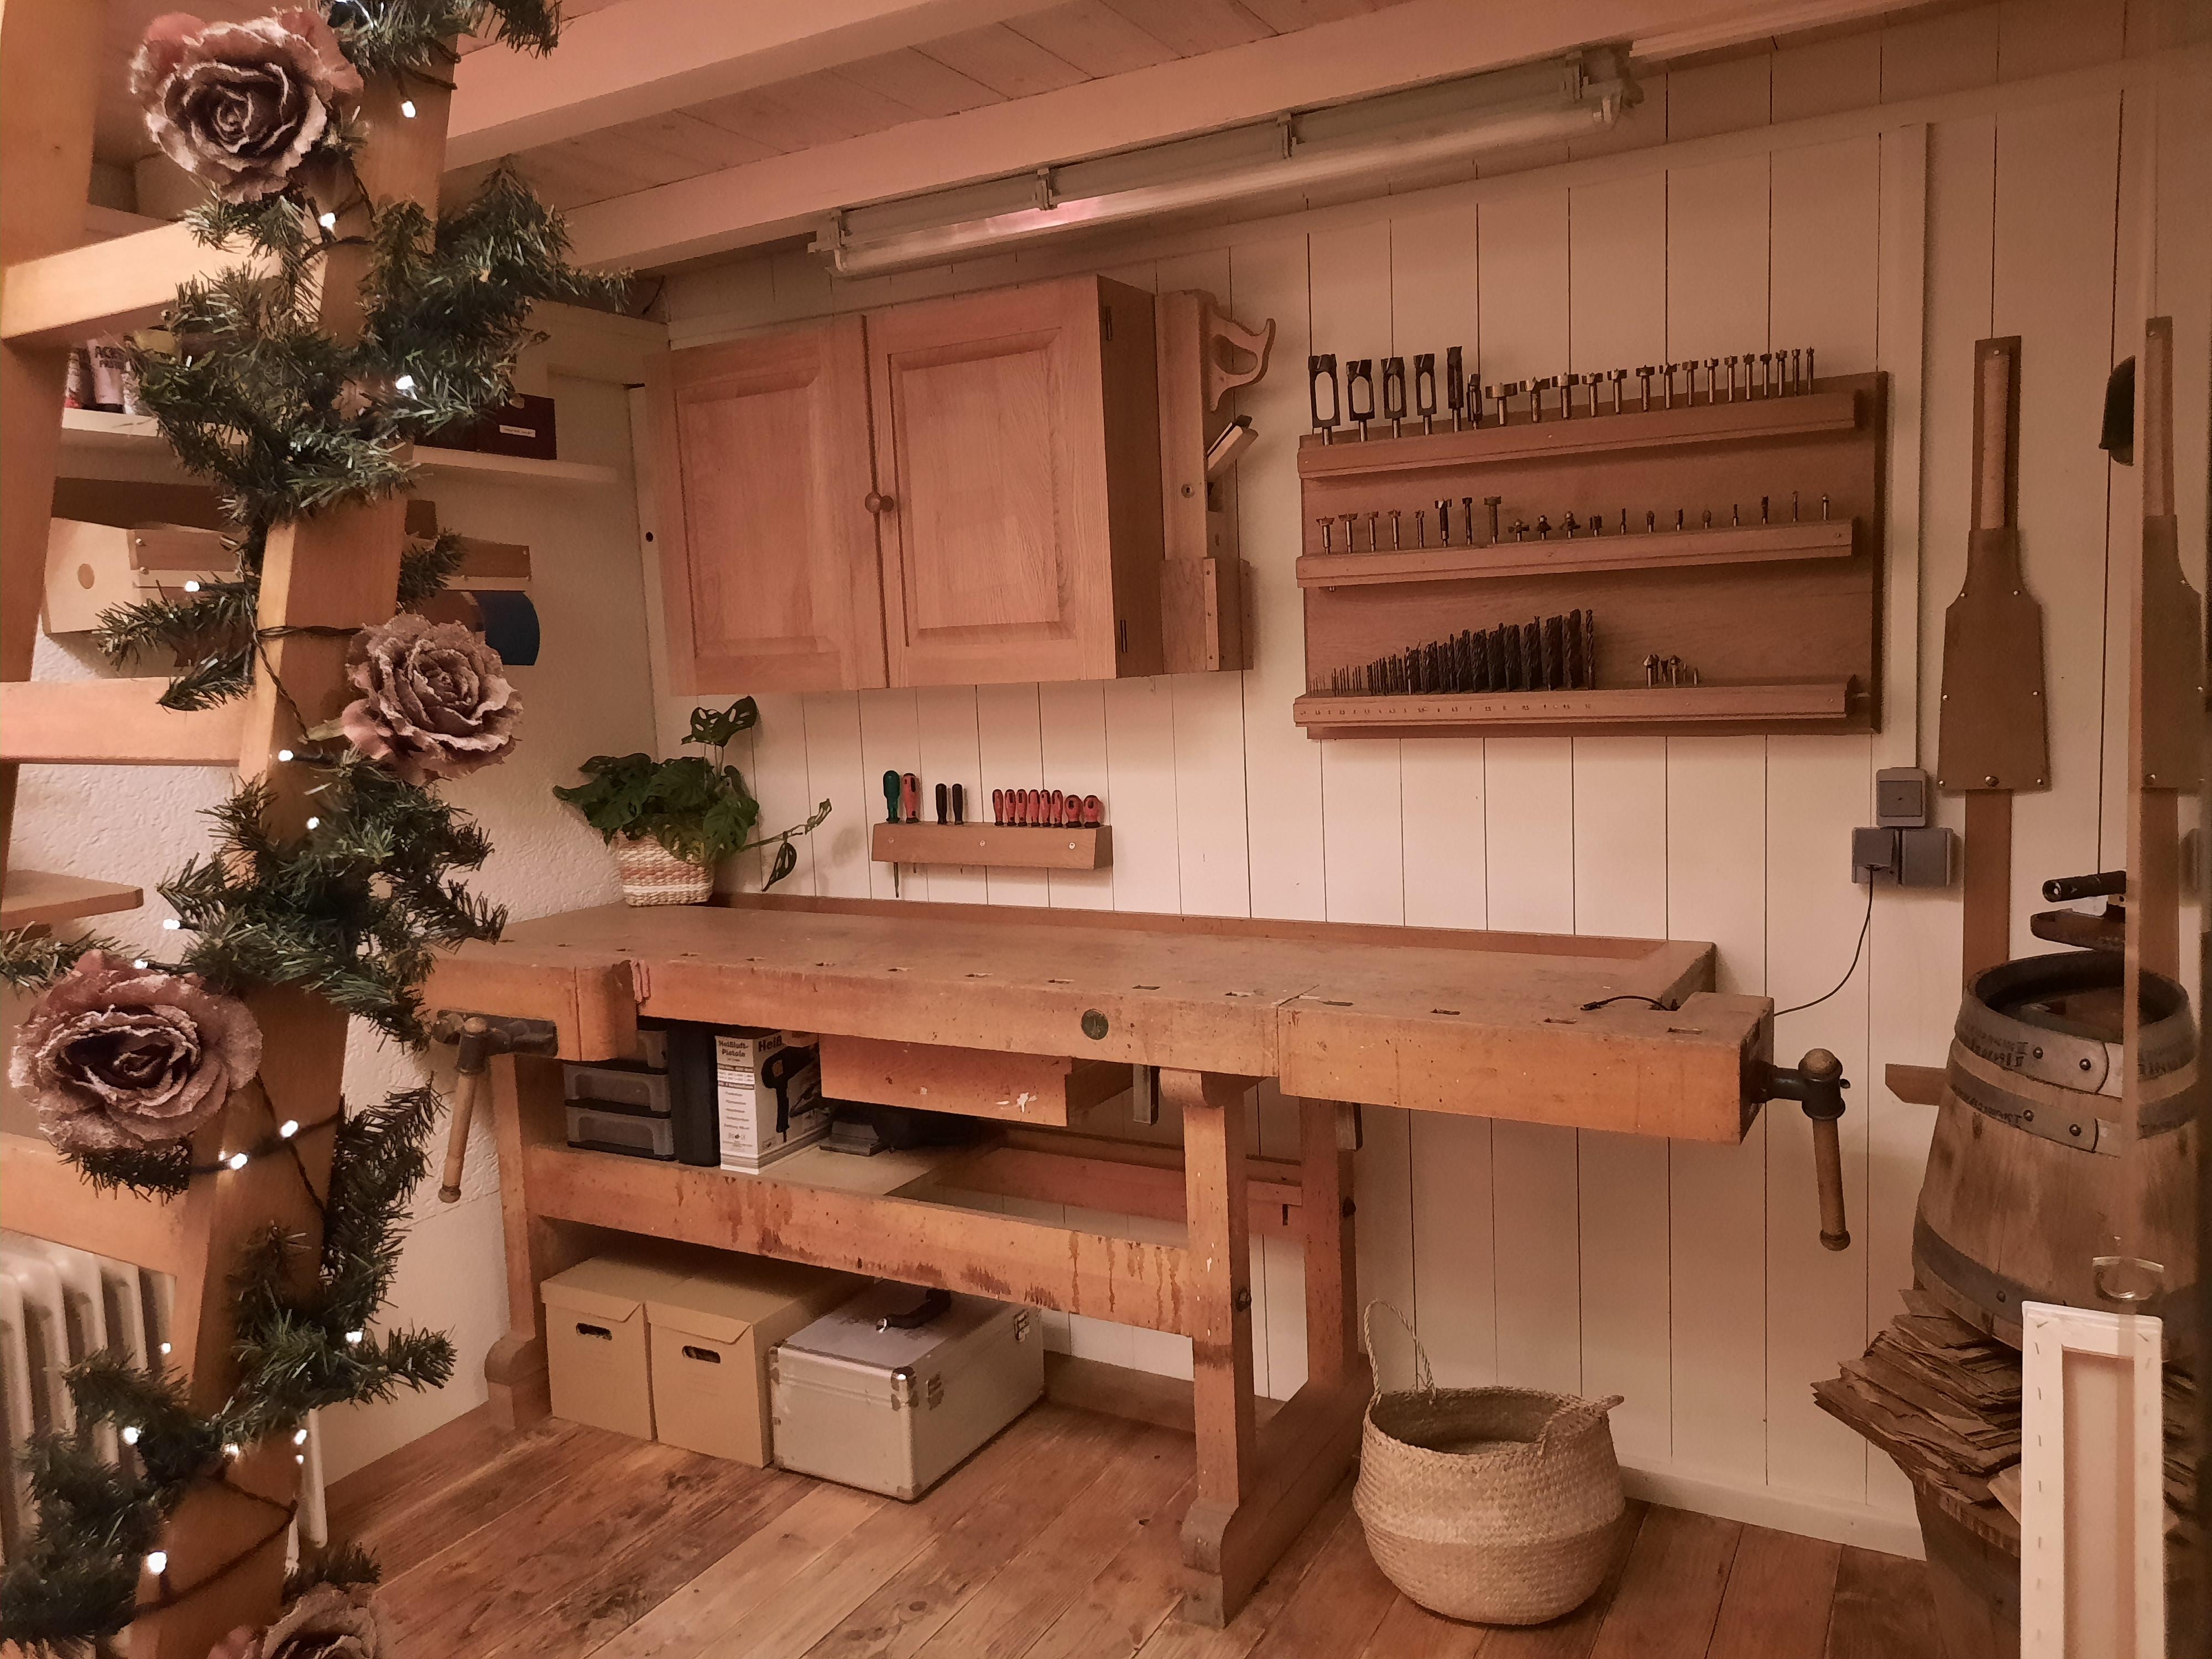 Meine kleine Werkstattwohnung...
#wohnung #werkstatt #kreativraum #weihnachtsdeko #holz #weiß #kleinaberfein #couchstyle 